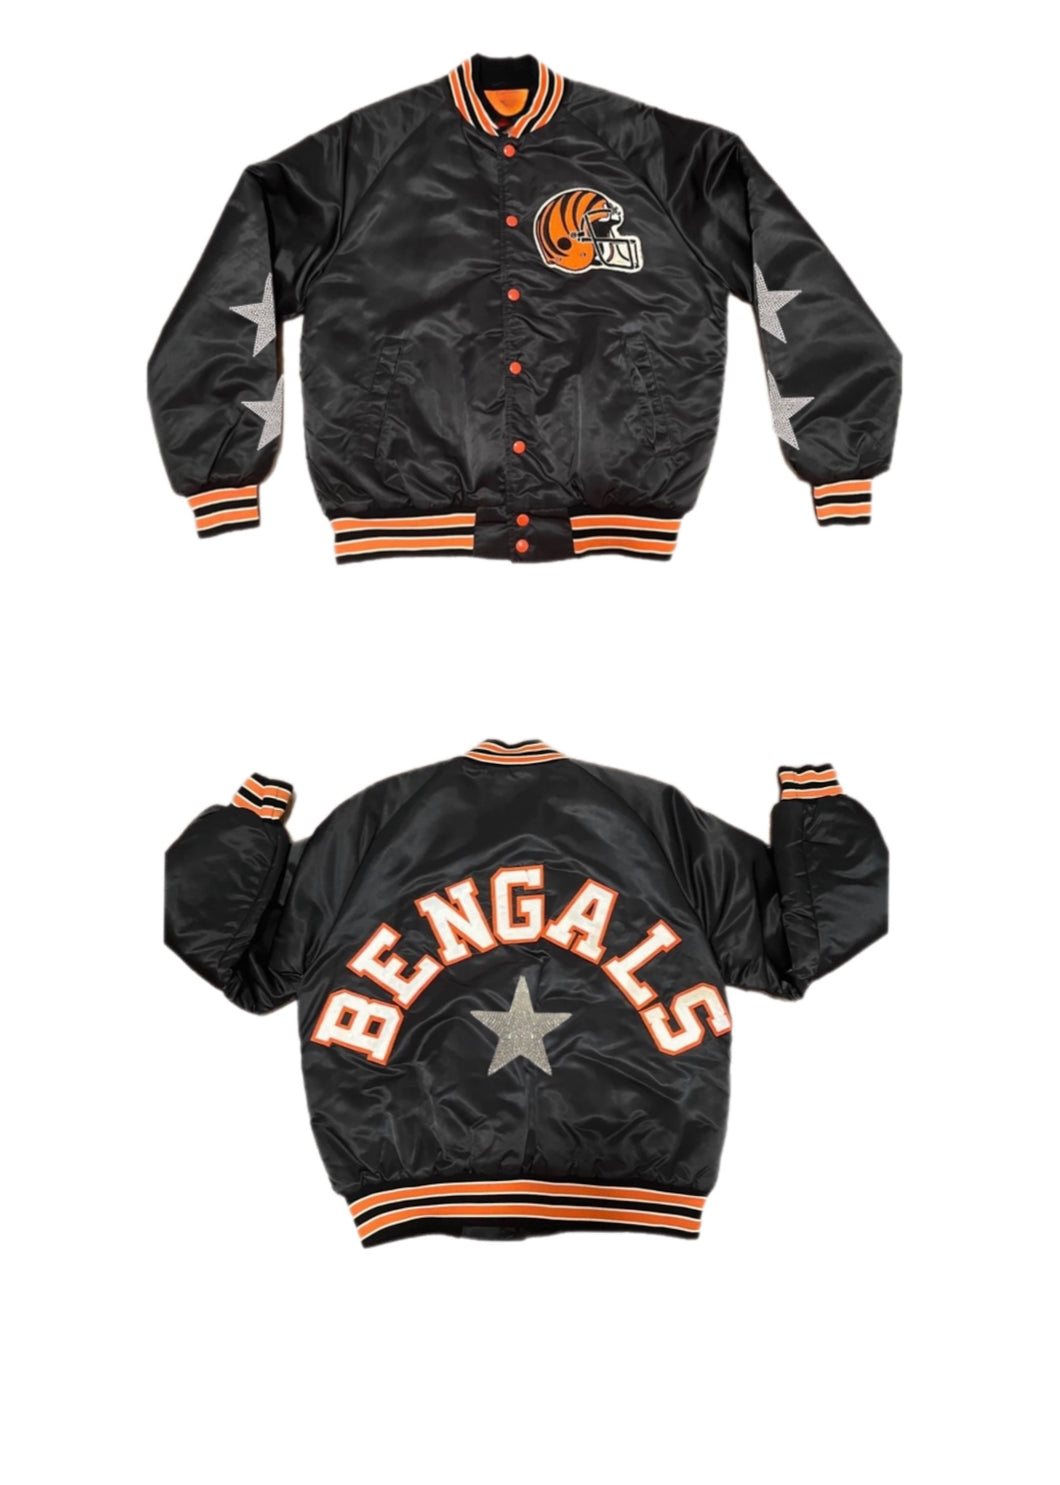 Cincinnati Bengals, NFL One of a KIND ”Rare Find” Vintage Jacket with Crystal Star Design